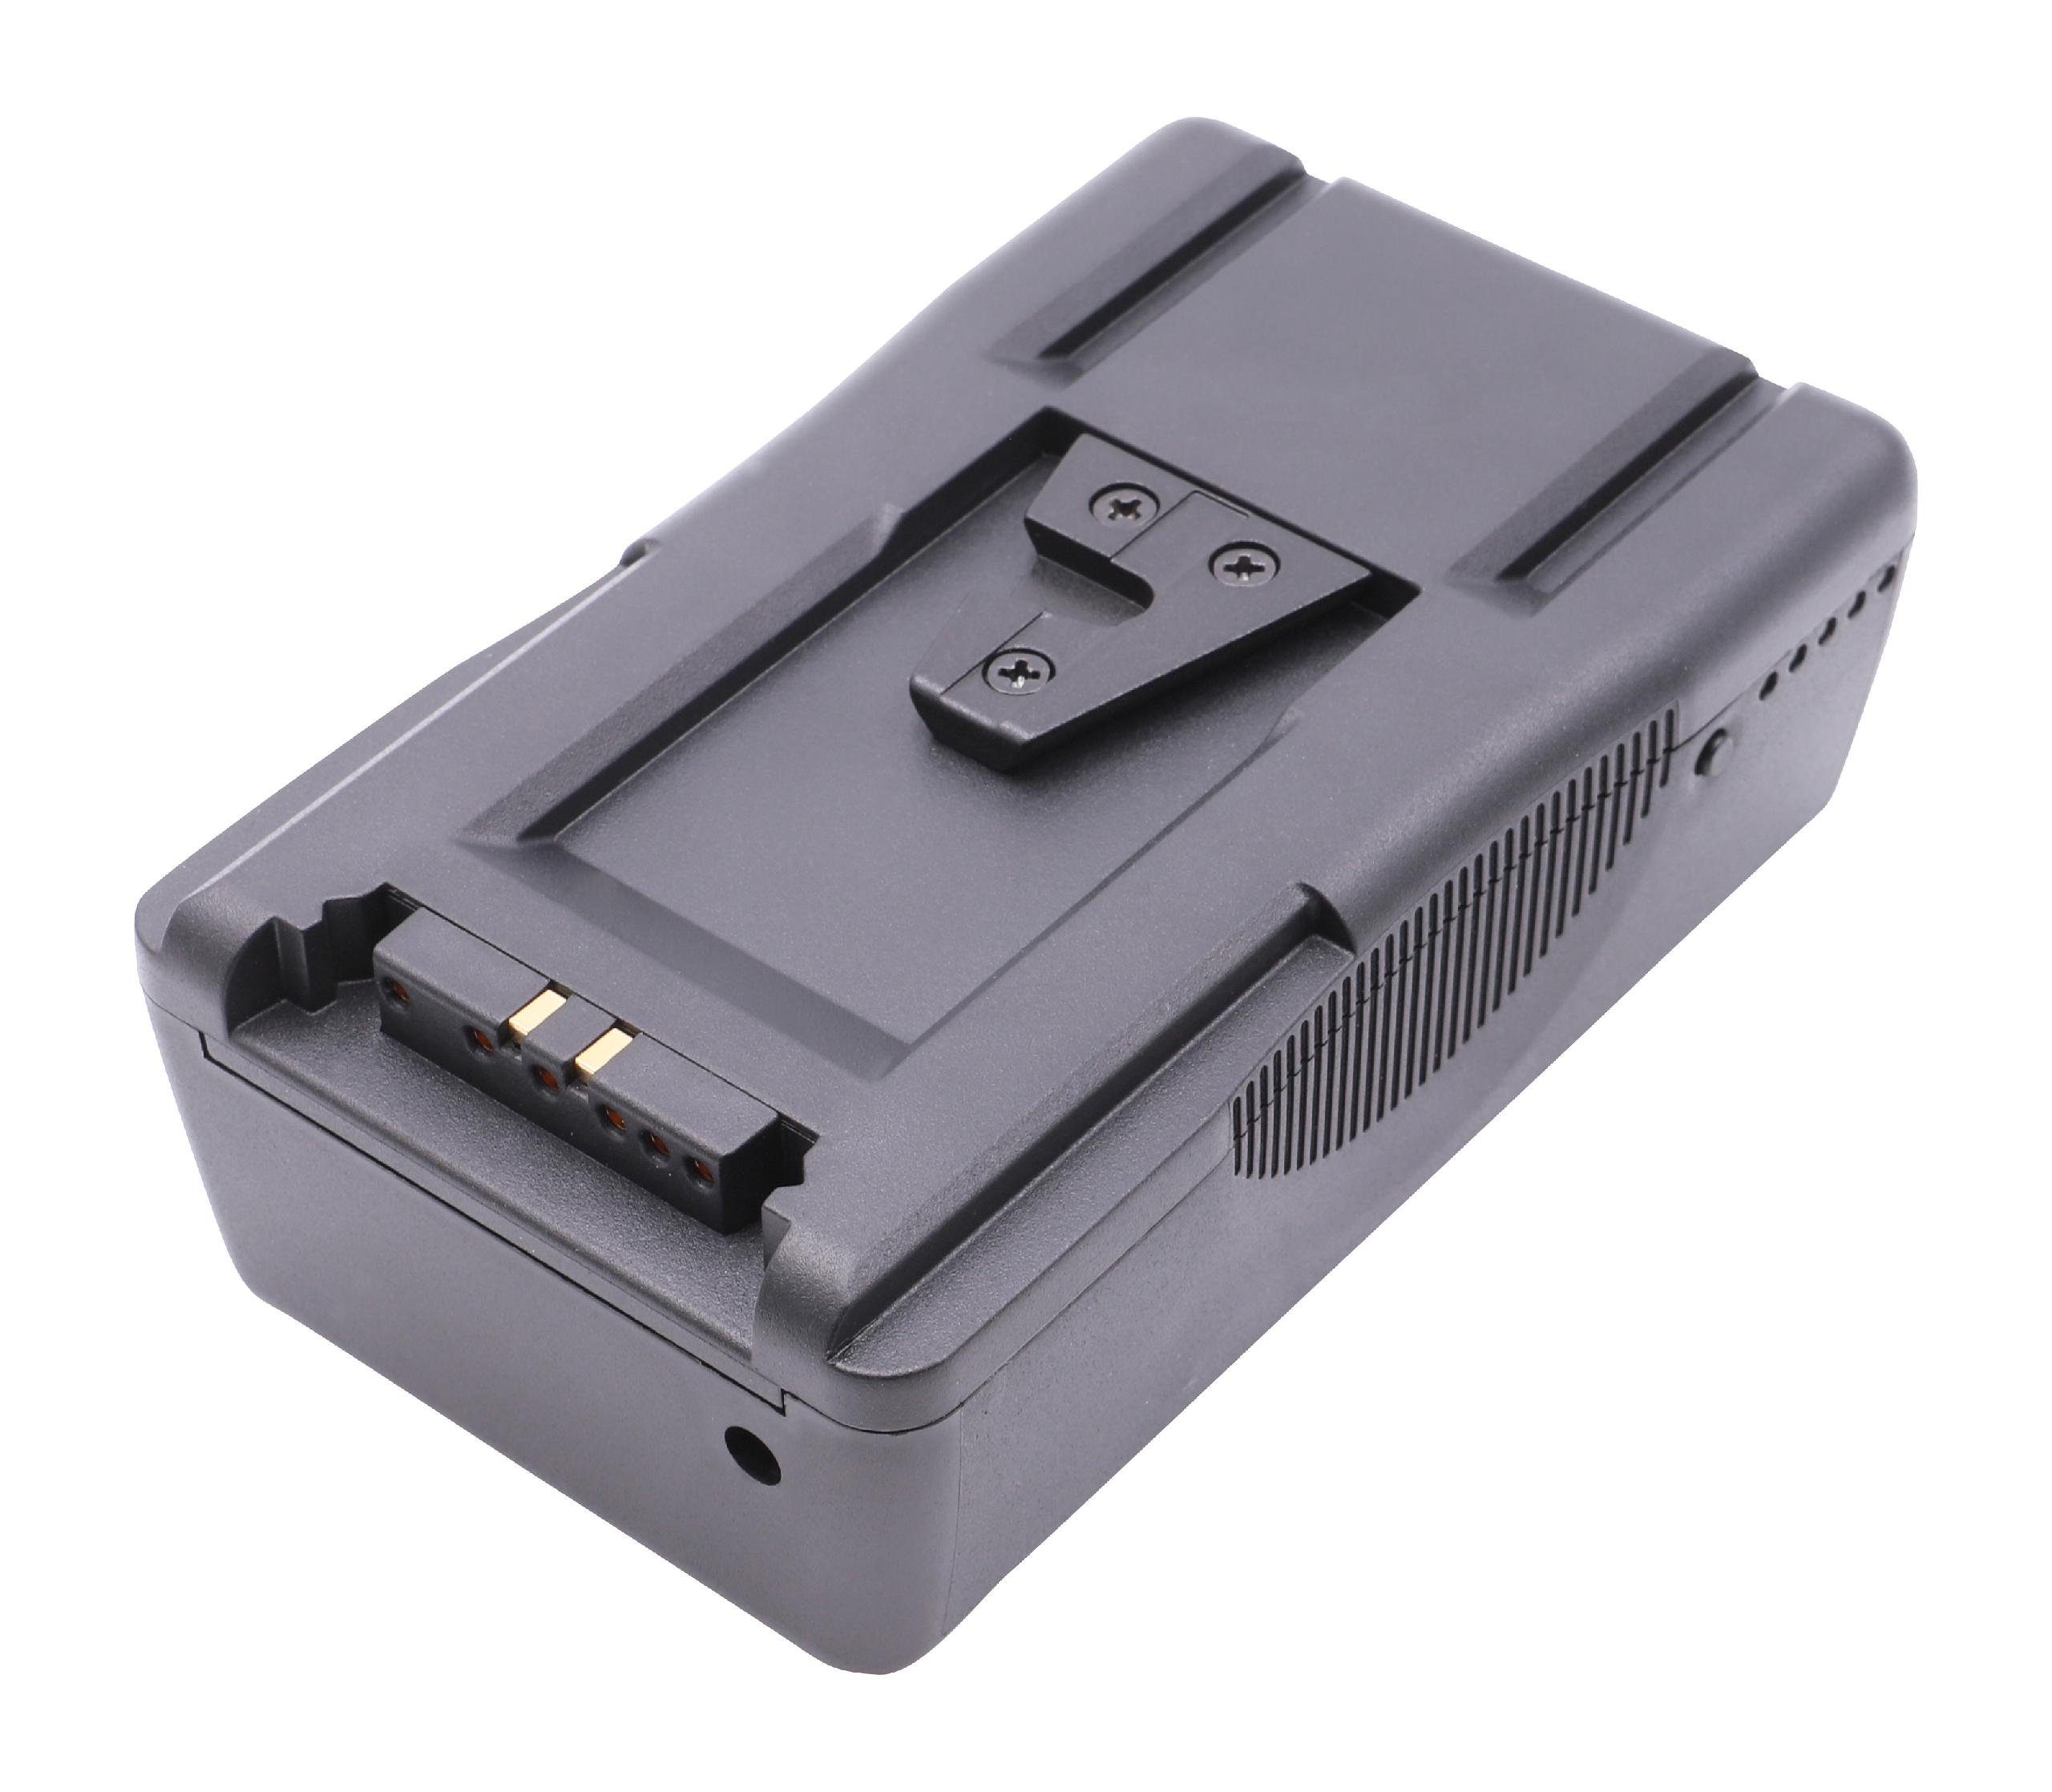 Kamera-Akku VL200 (14,4 Godox mit Li-Ion vhbw V) kompatibel 7800 VL300, VL150, mAh